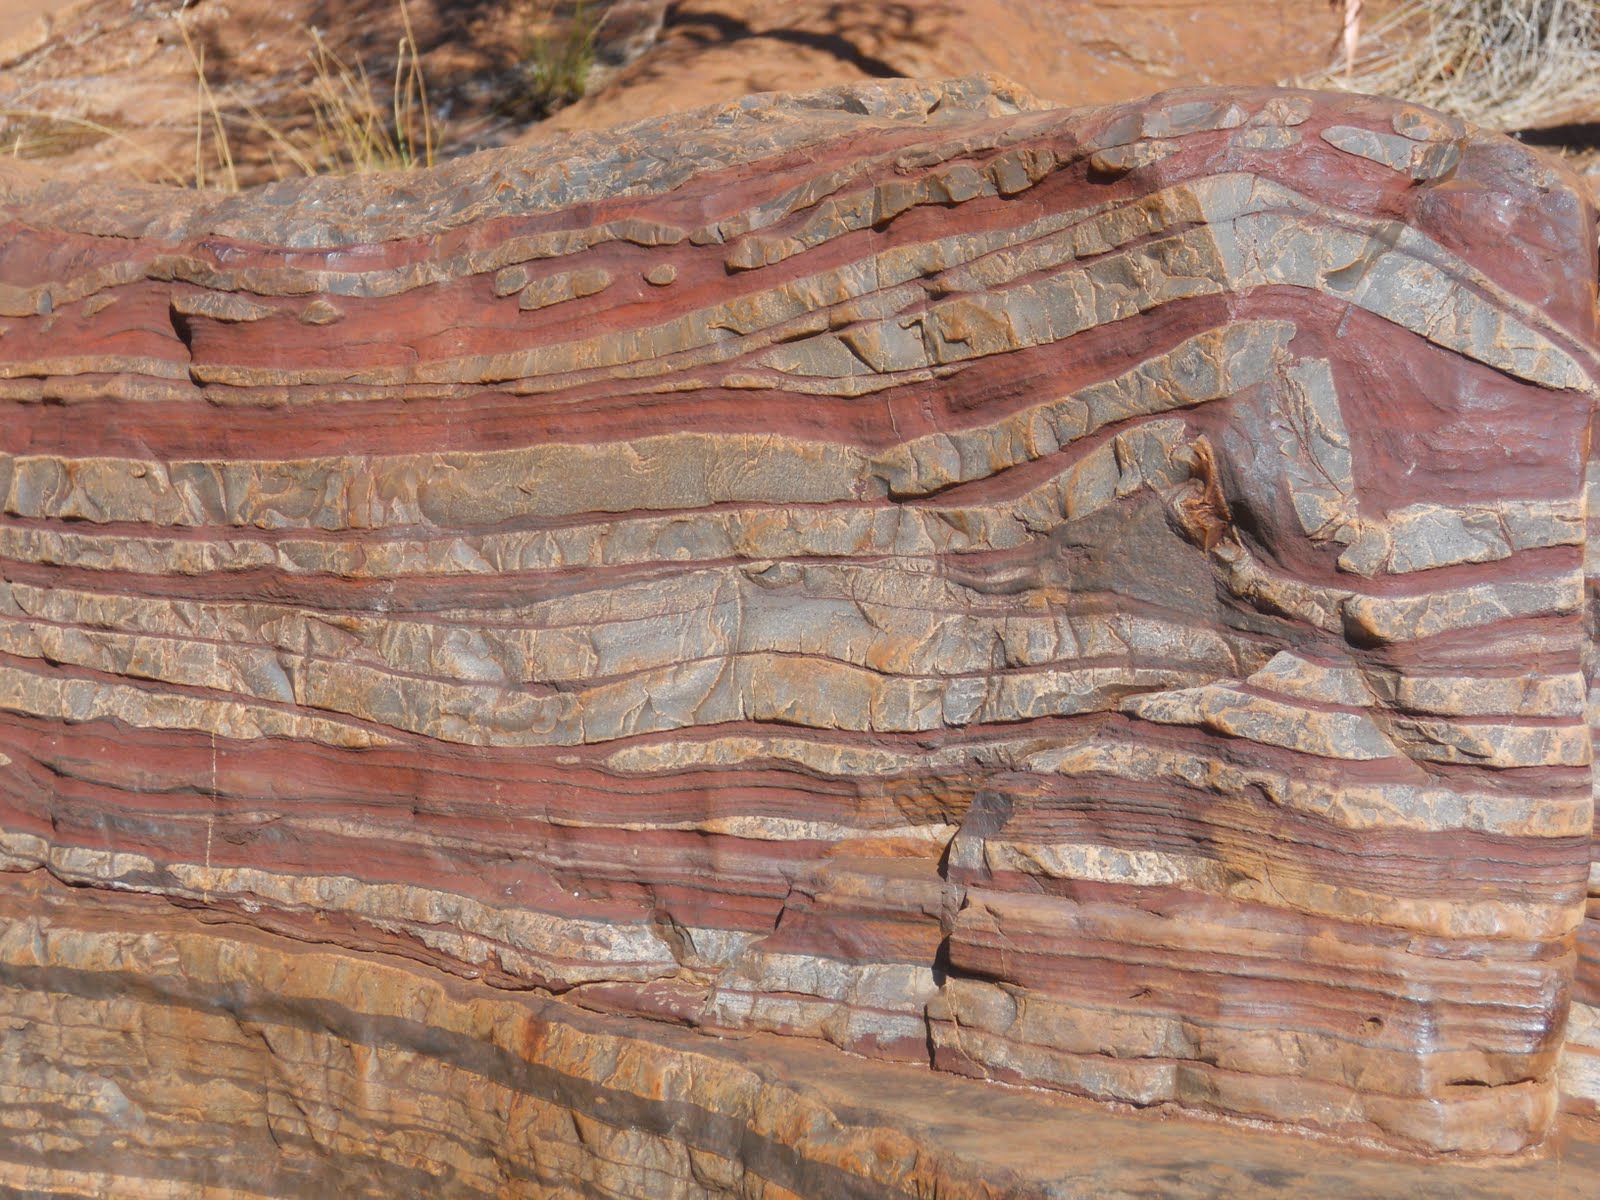 Rock layers photo